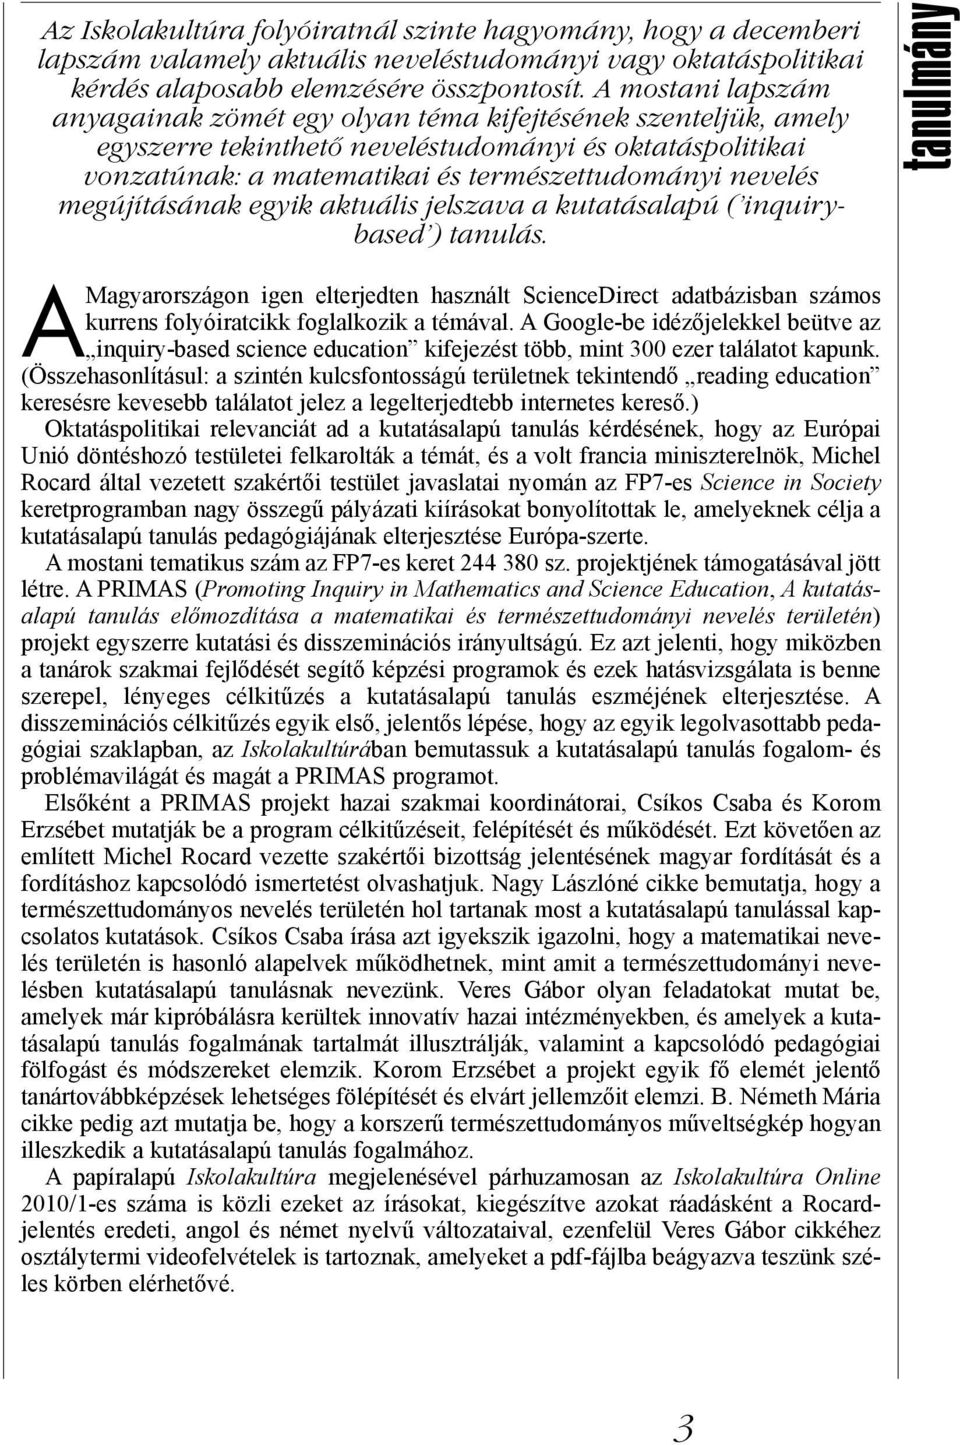 megújításának egyik aktuális jelszava a kutatásalapú ( inquirybased ) tanulás. A Magyarországon igen elterjedten használt ScienceDirect adatbázisban számos kurrens folyóiratcikk foglalkozik a témával.